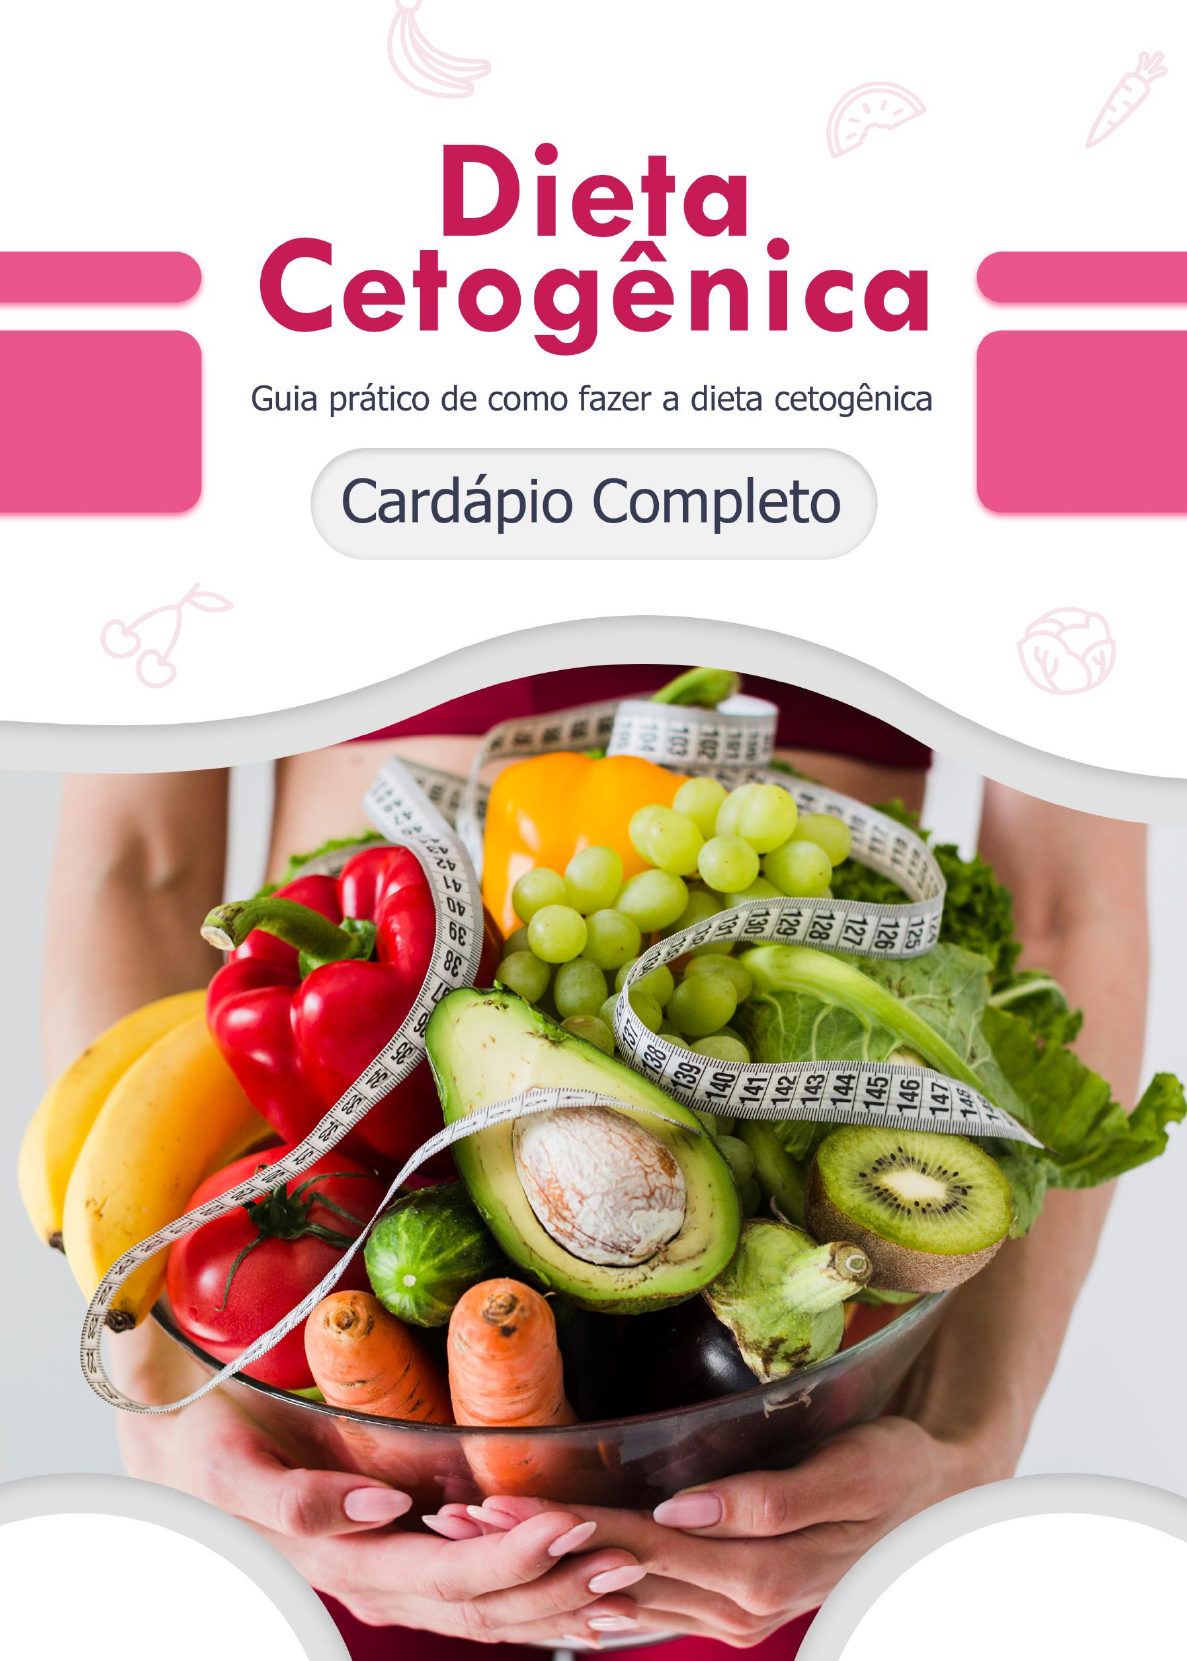 2-Cardápio Cetogênica - Dieta de 17 Dias - cardapio dieta cetogenica